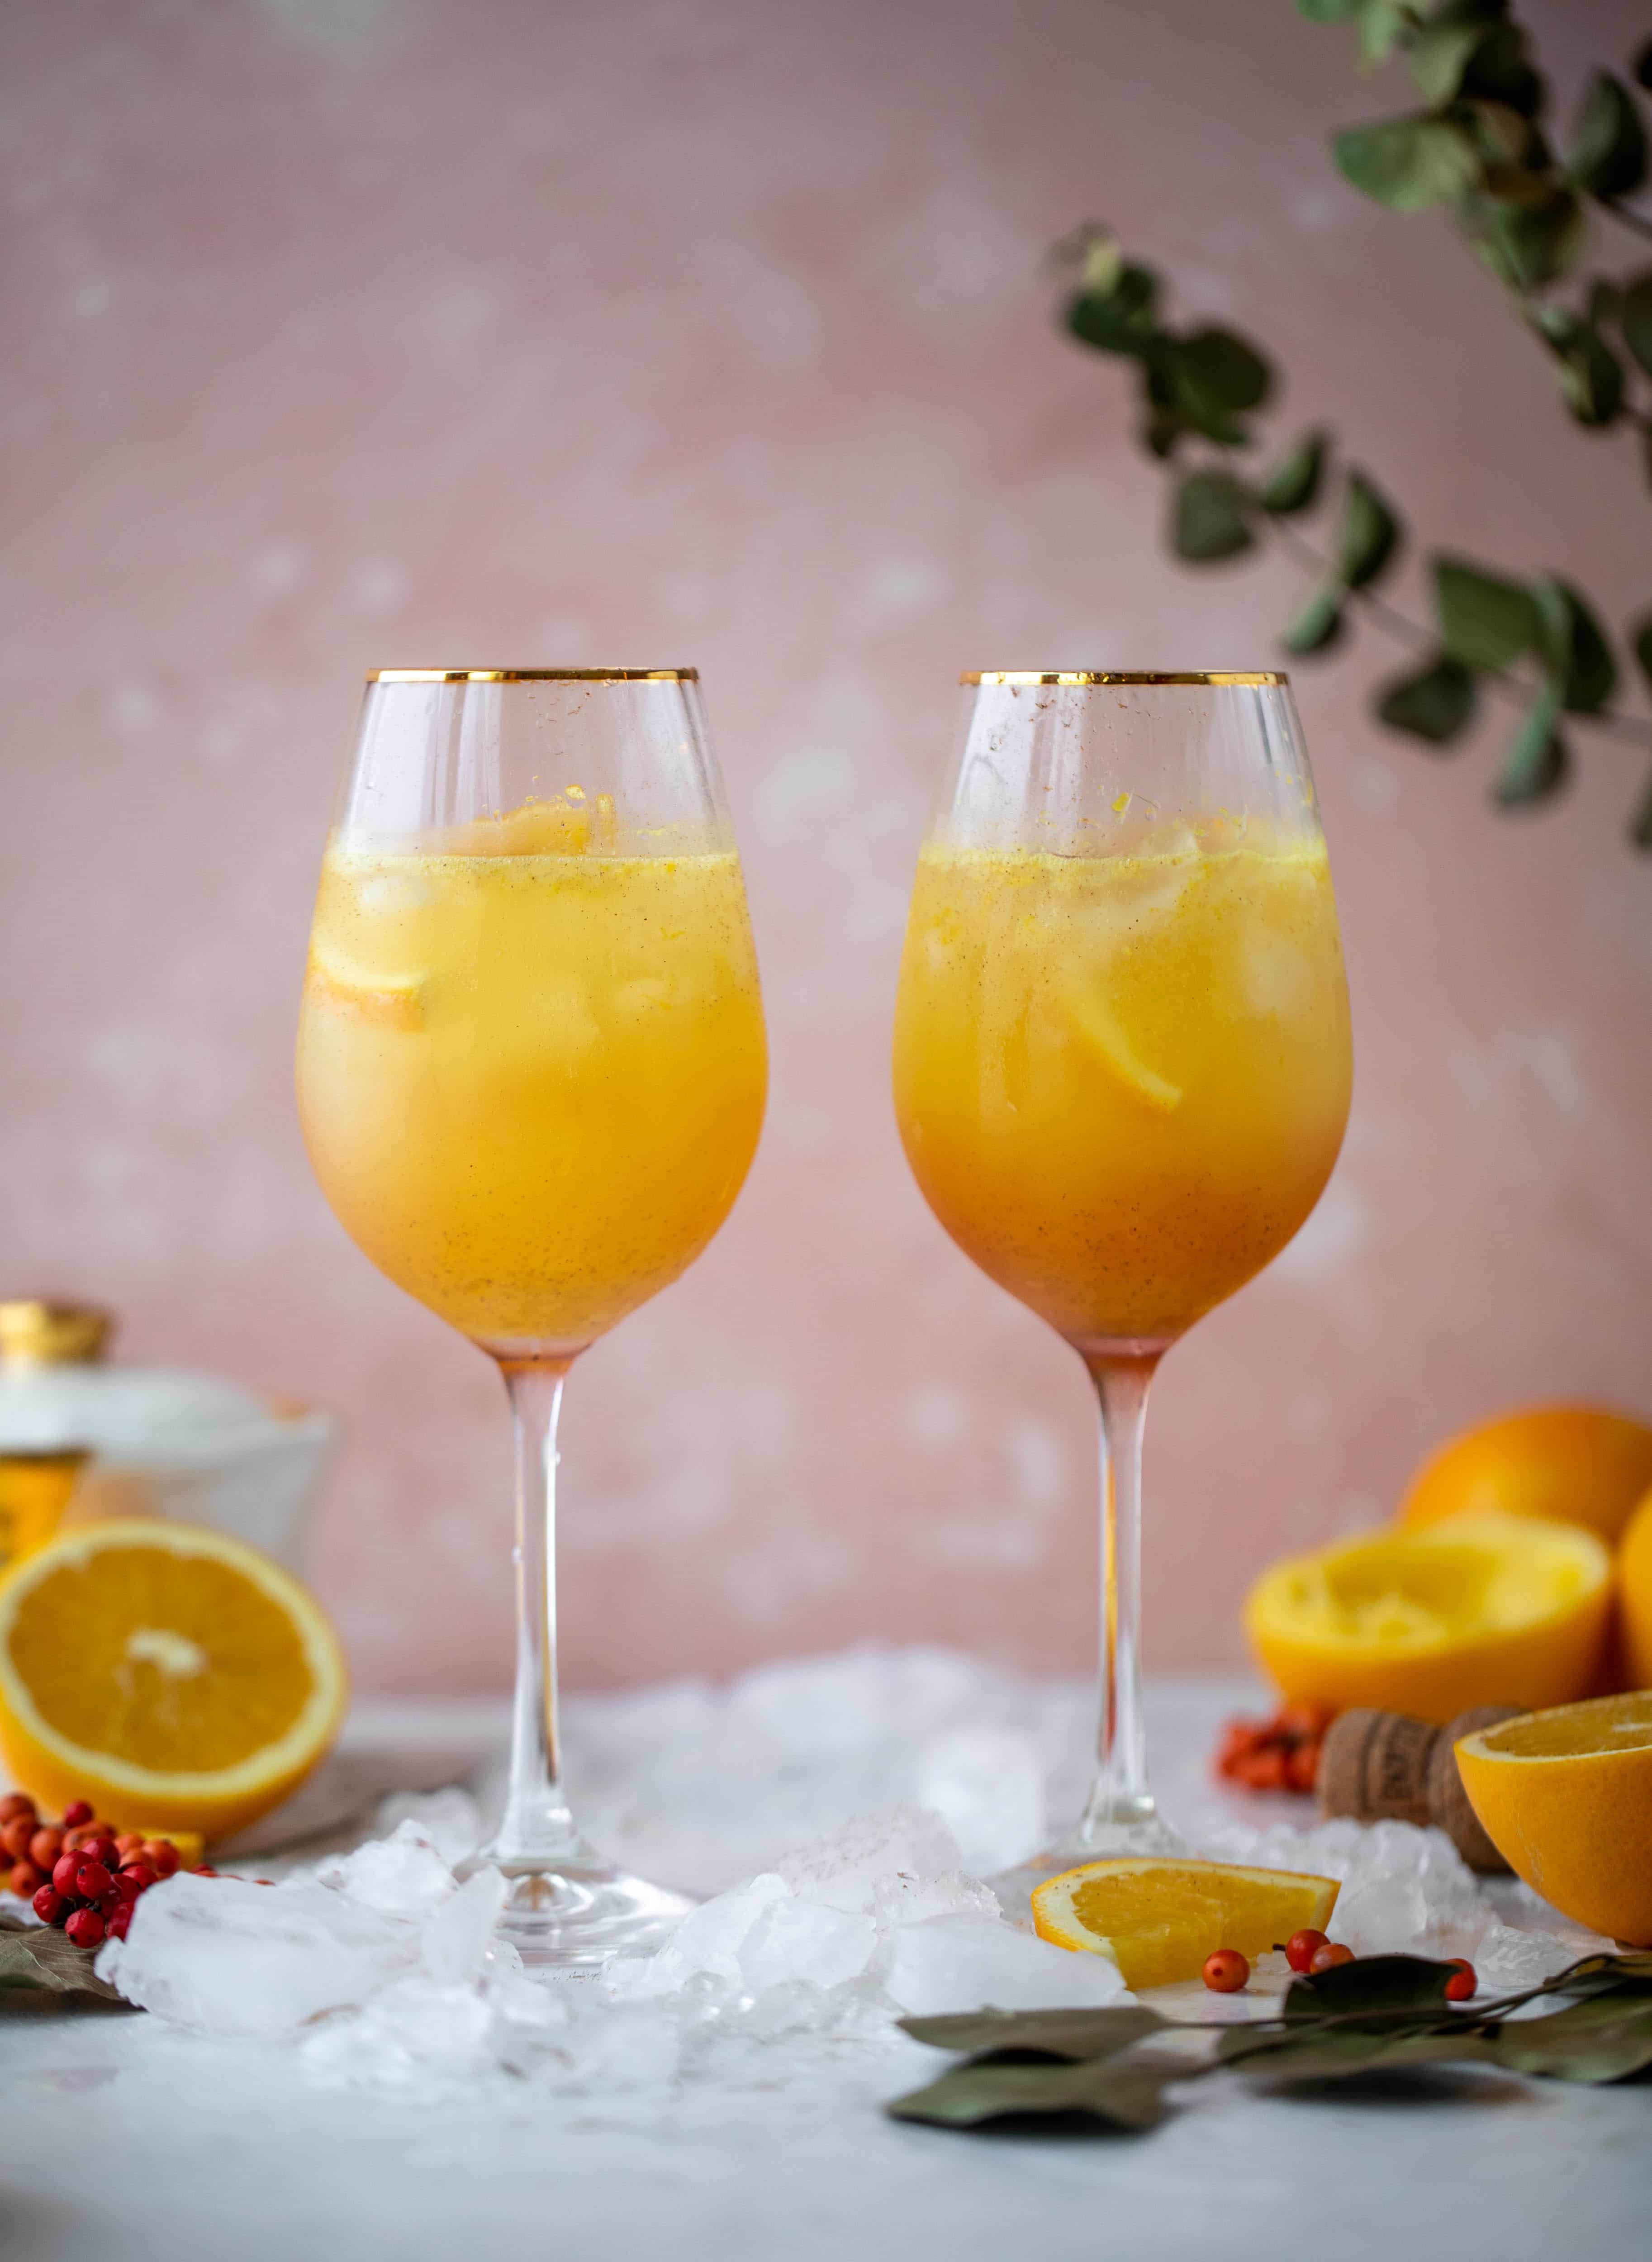 这款加了香料的橙汁汽水是一种更花哨的含羞草，类似于aperol汽水!一种新鲜的香料橙汁，混合了普罗赛克和苏打水。太好了!